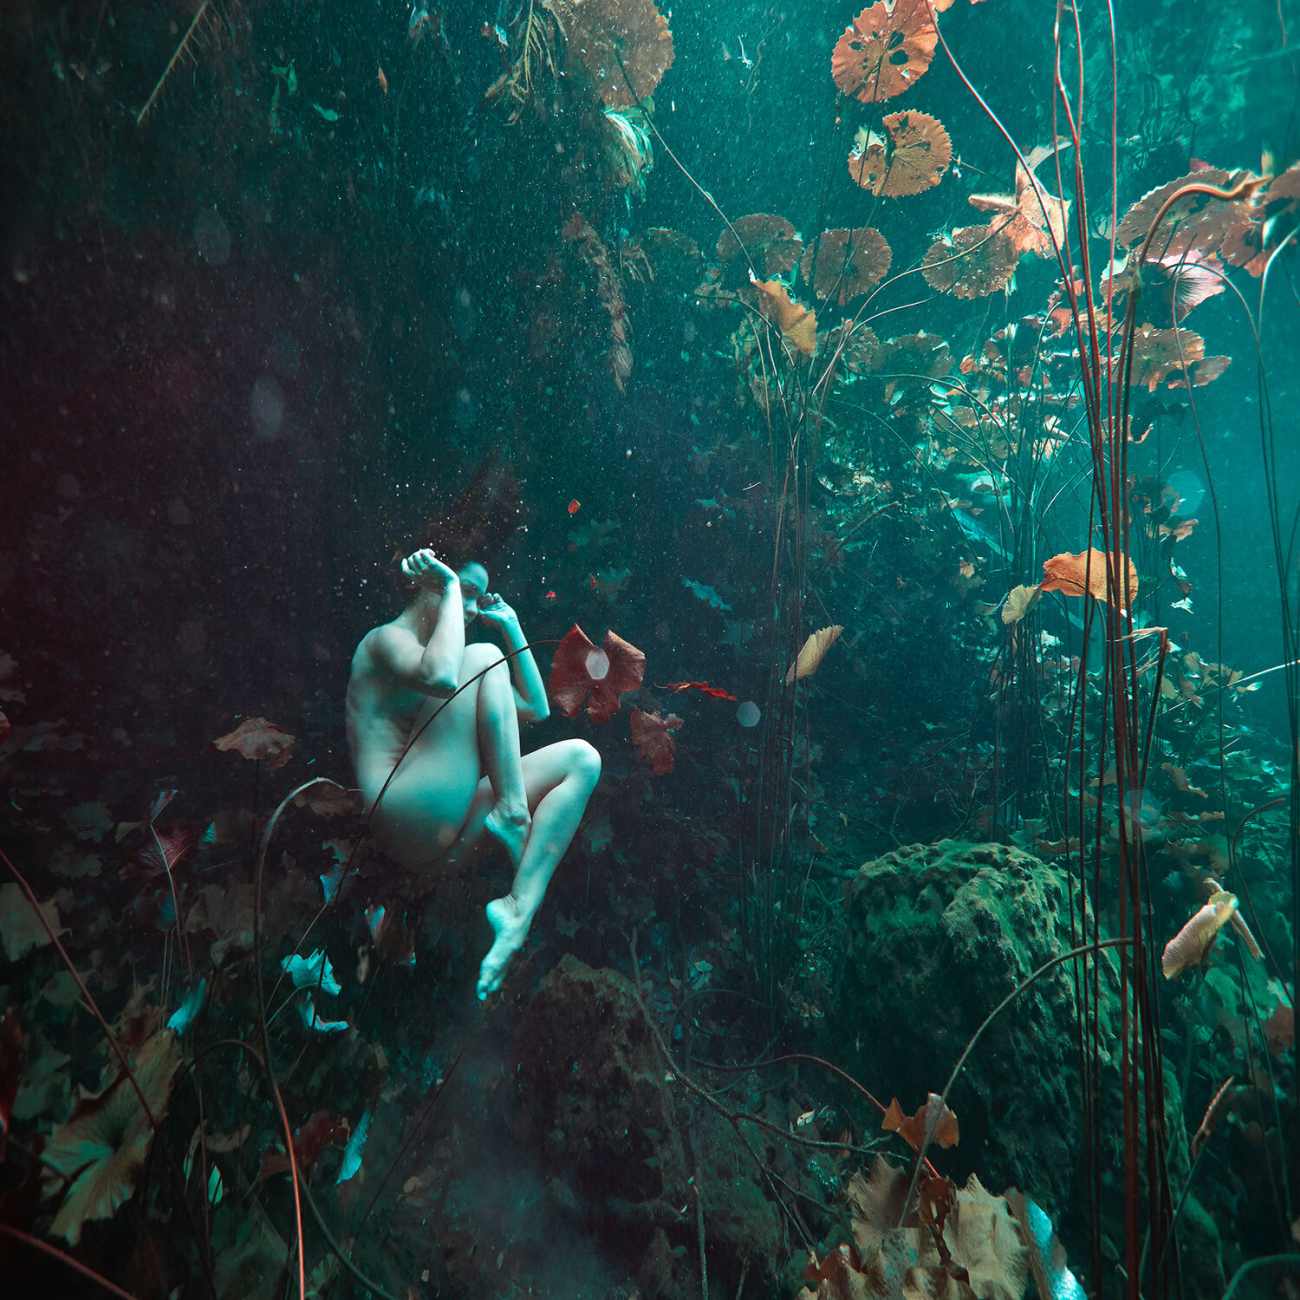 Underwater photographic nude study